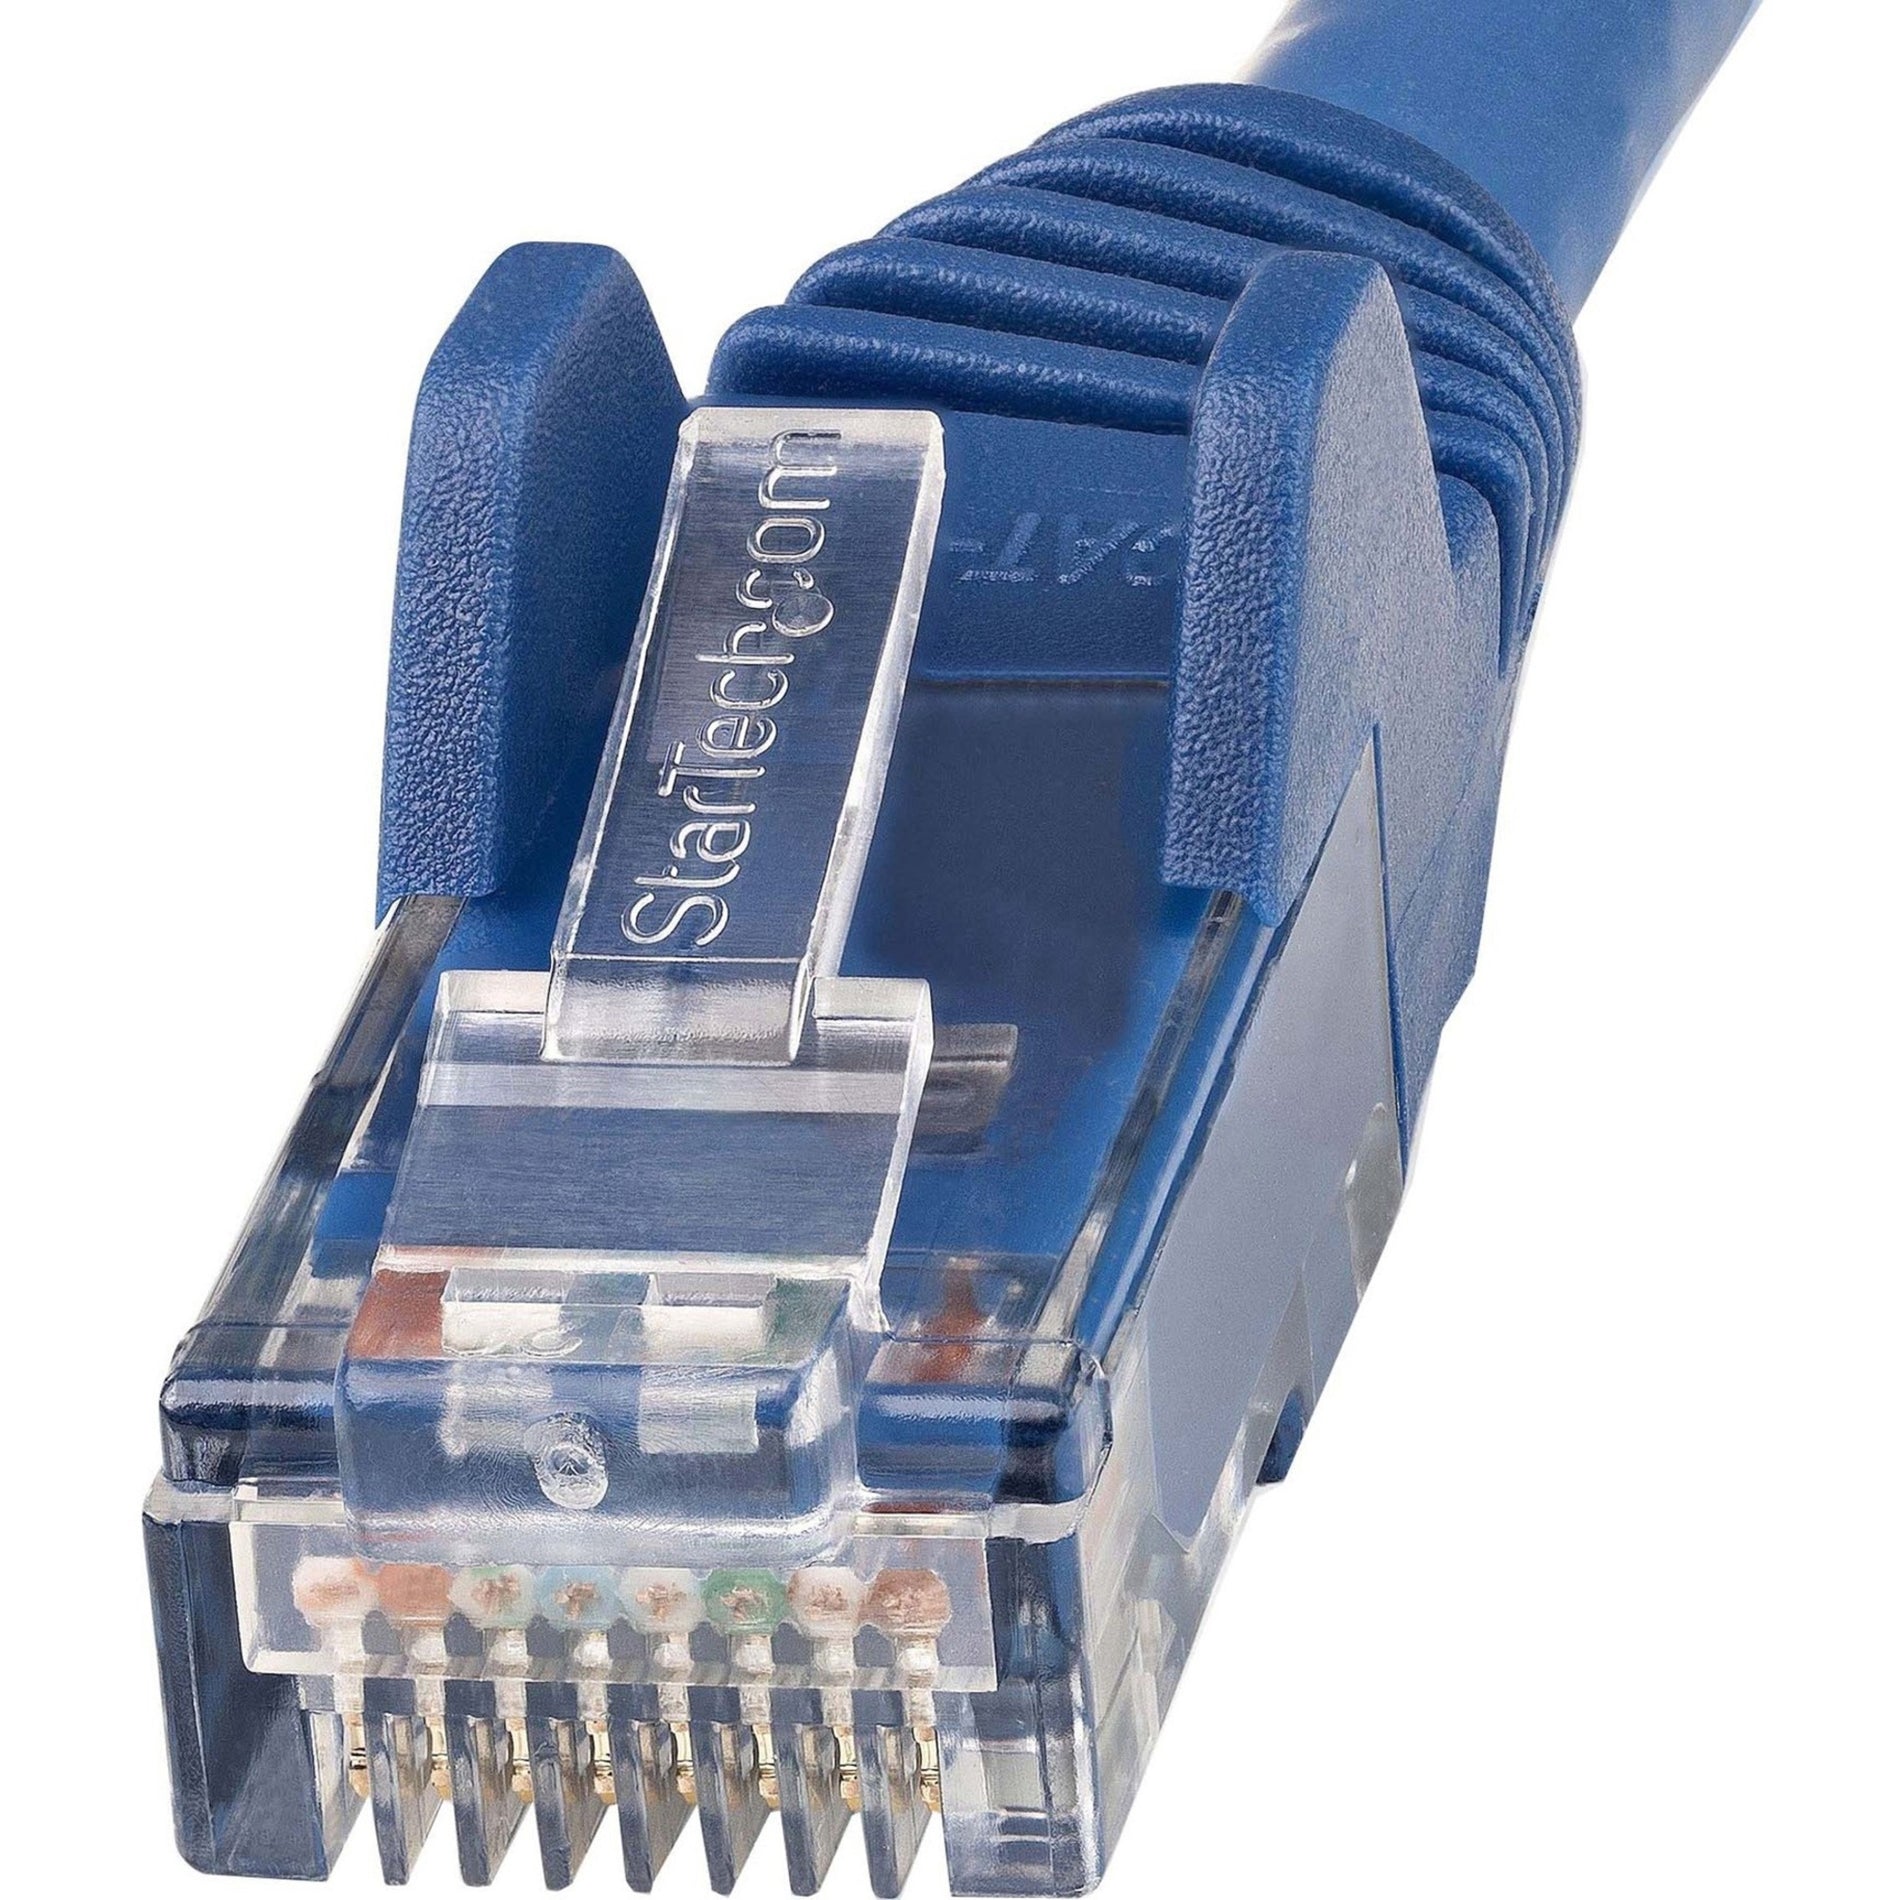 StarTech.com N6LPATCH10BL 10ft LSZH CAT6 Ethernet Kabel - Blau Flexibel PoE Stranded 10 Gbit/s